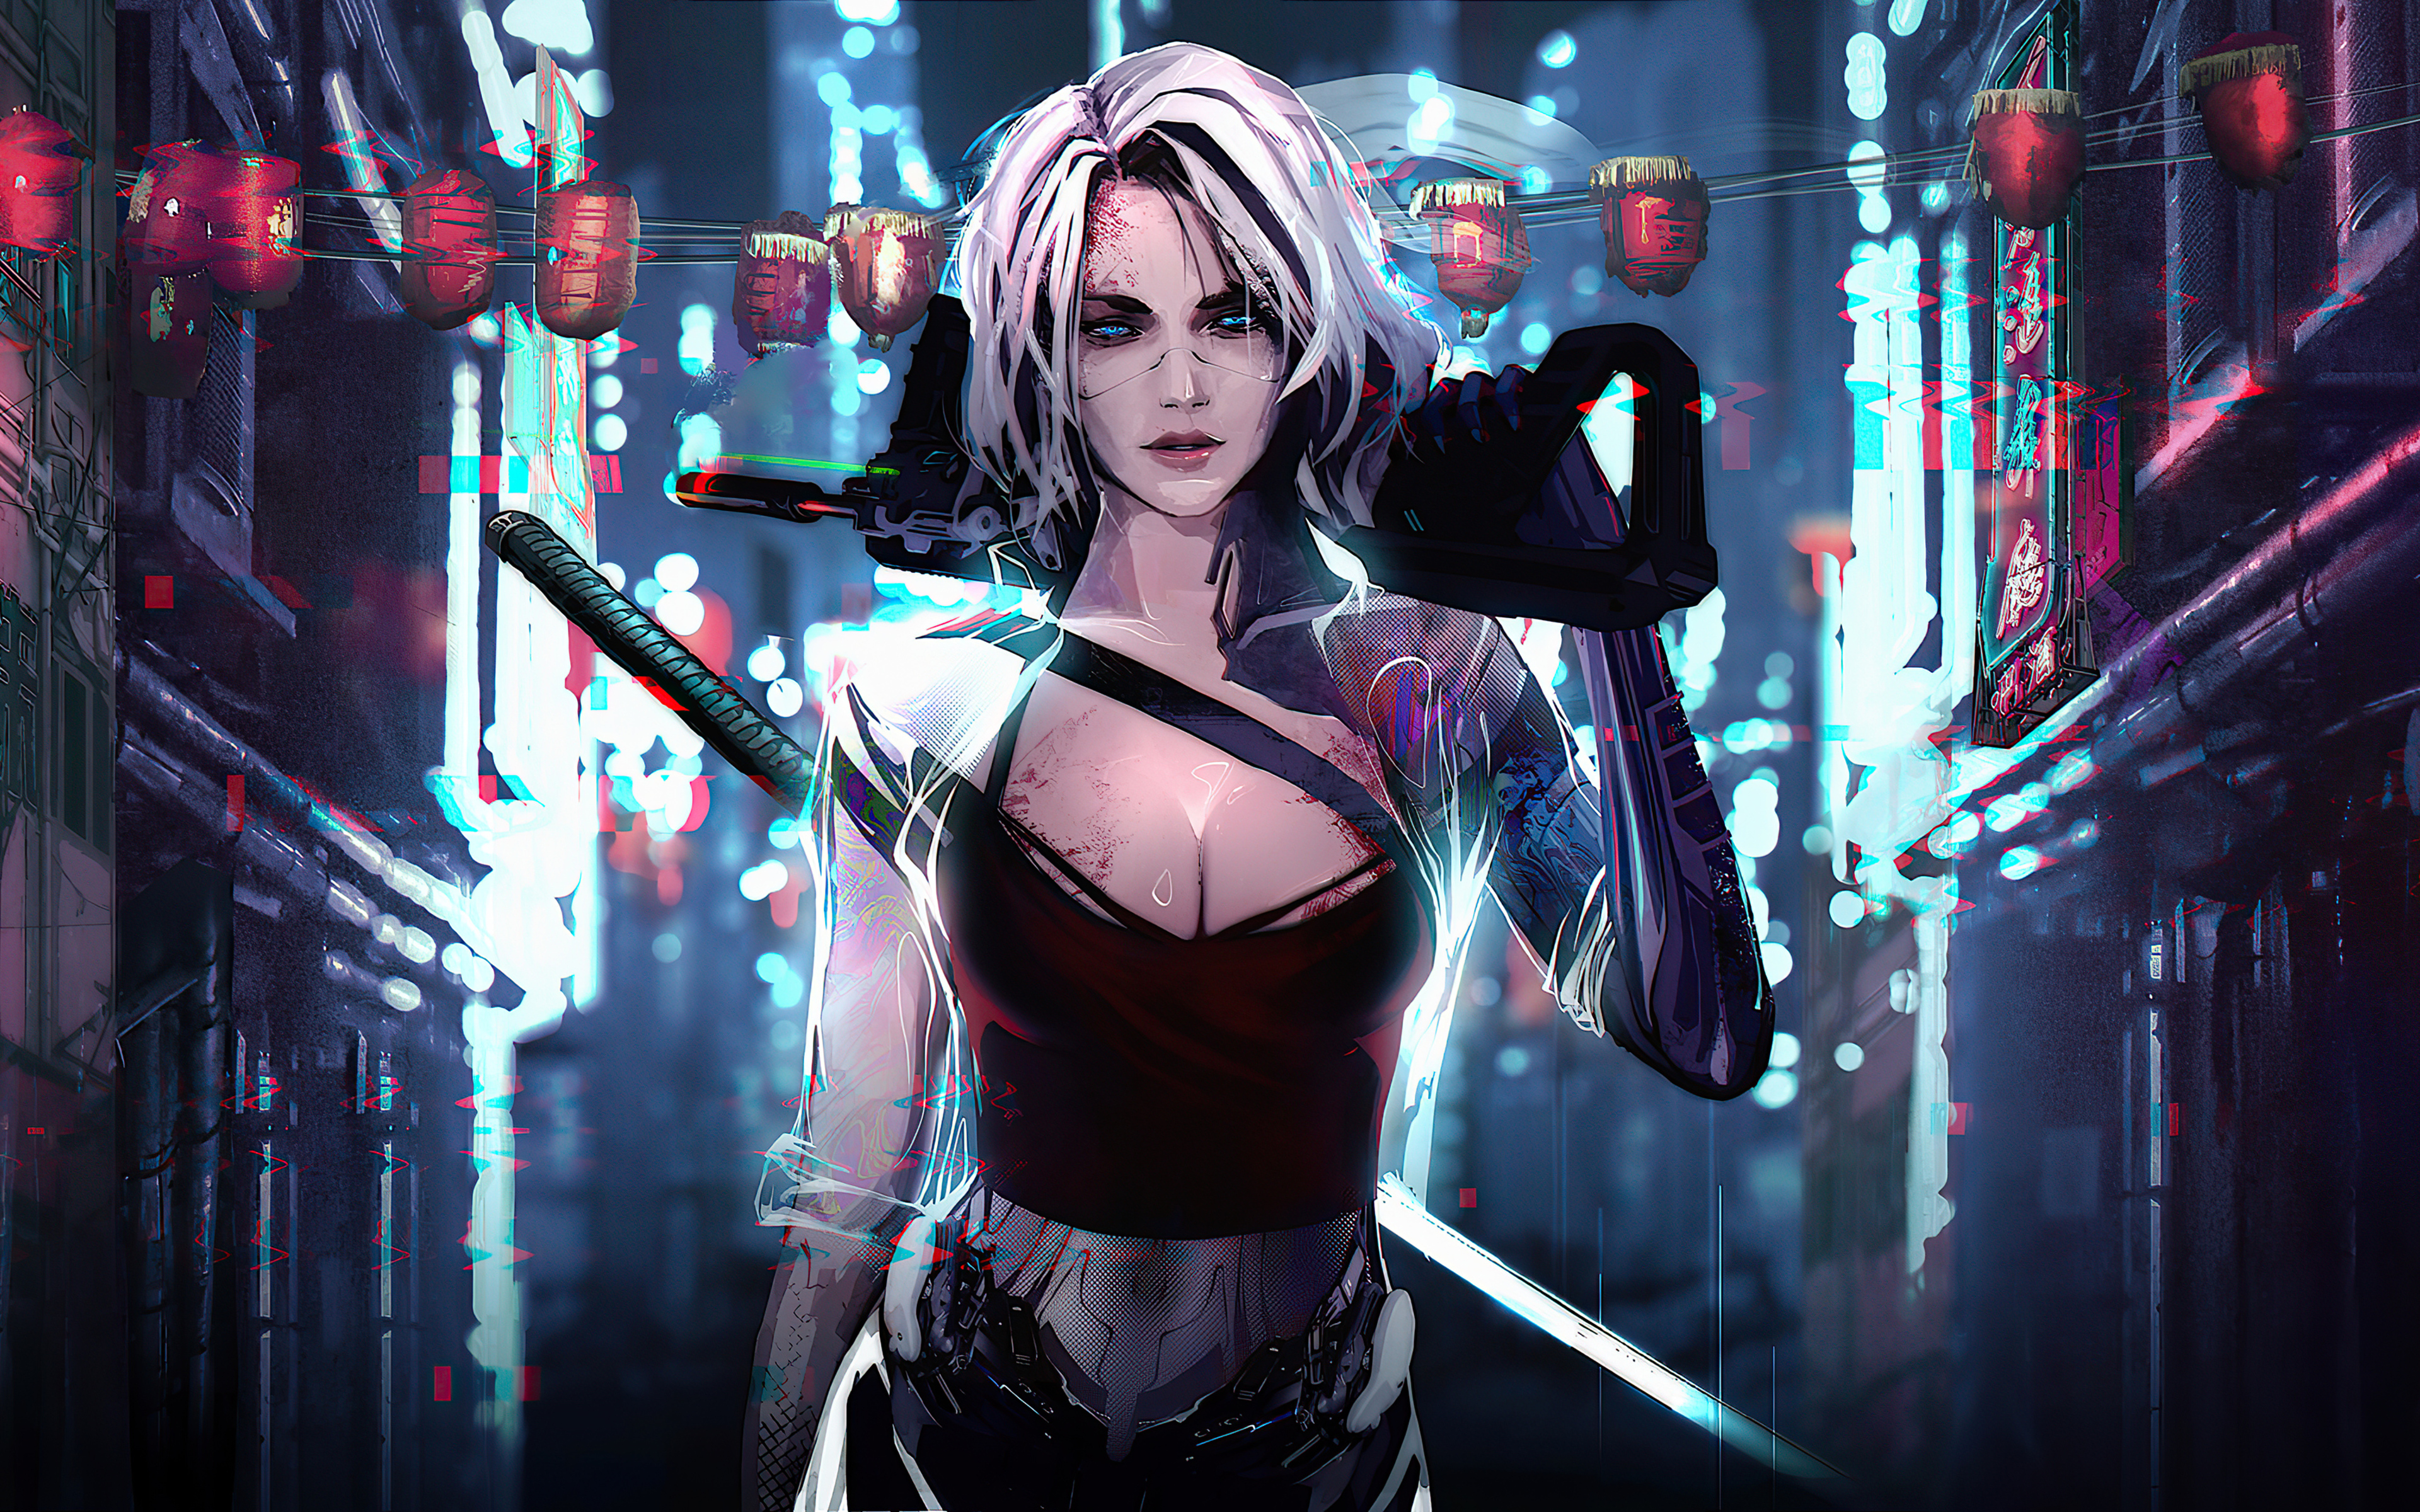 Cyberpunk Cyborg Women Artwork Rashed AlAkroka 3840x2400